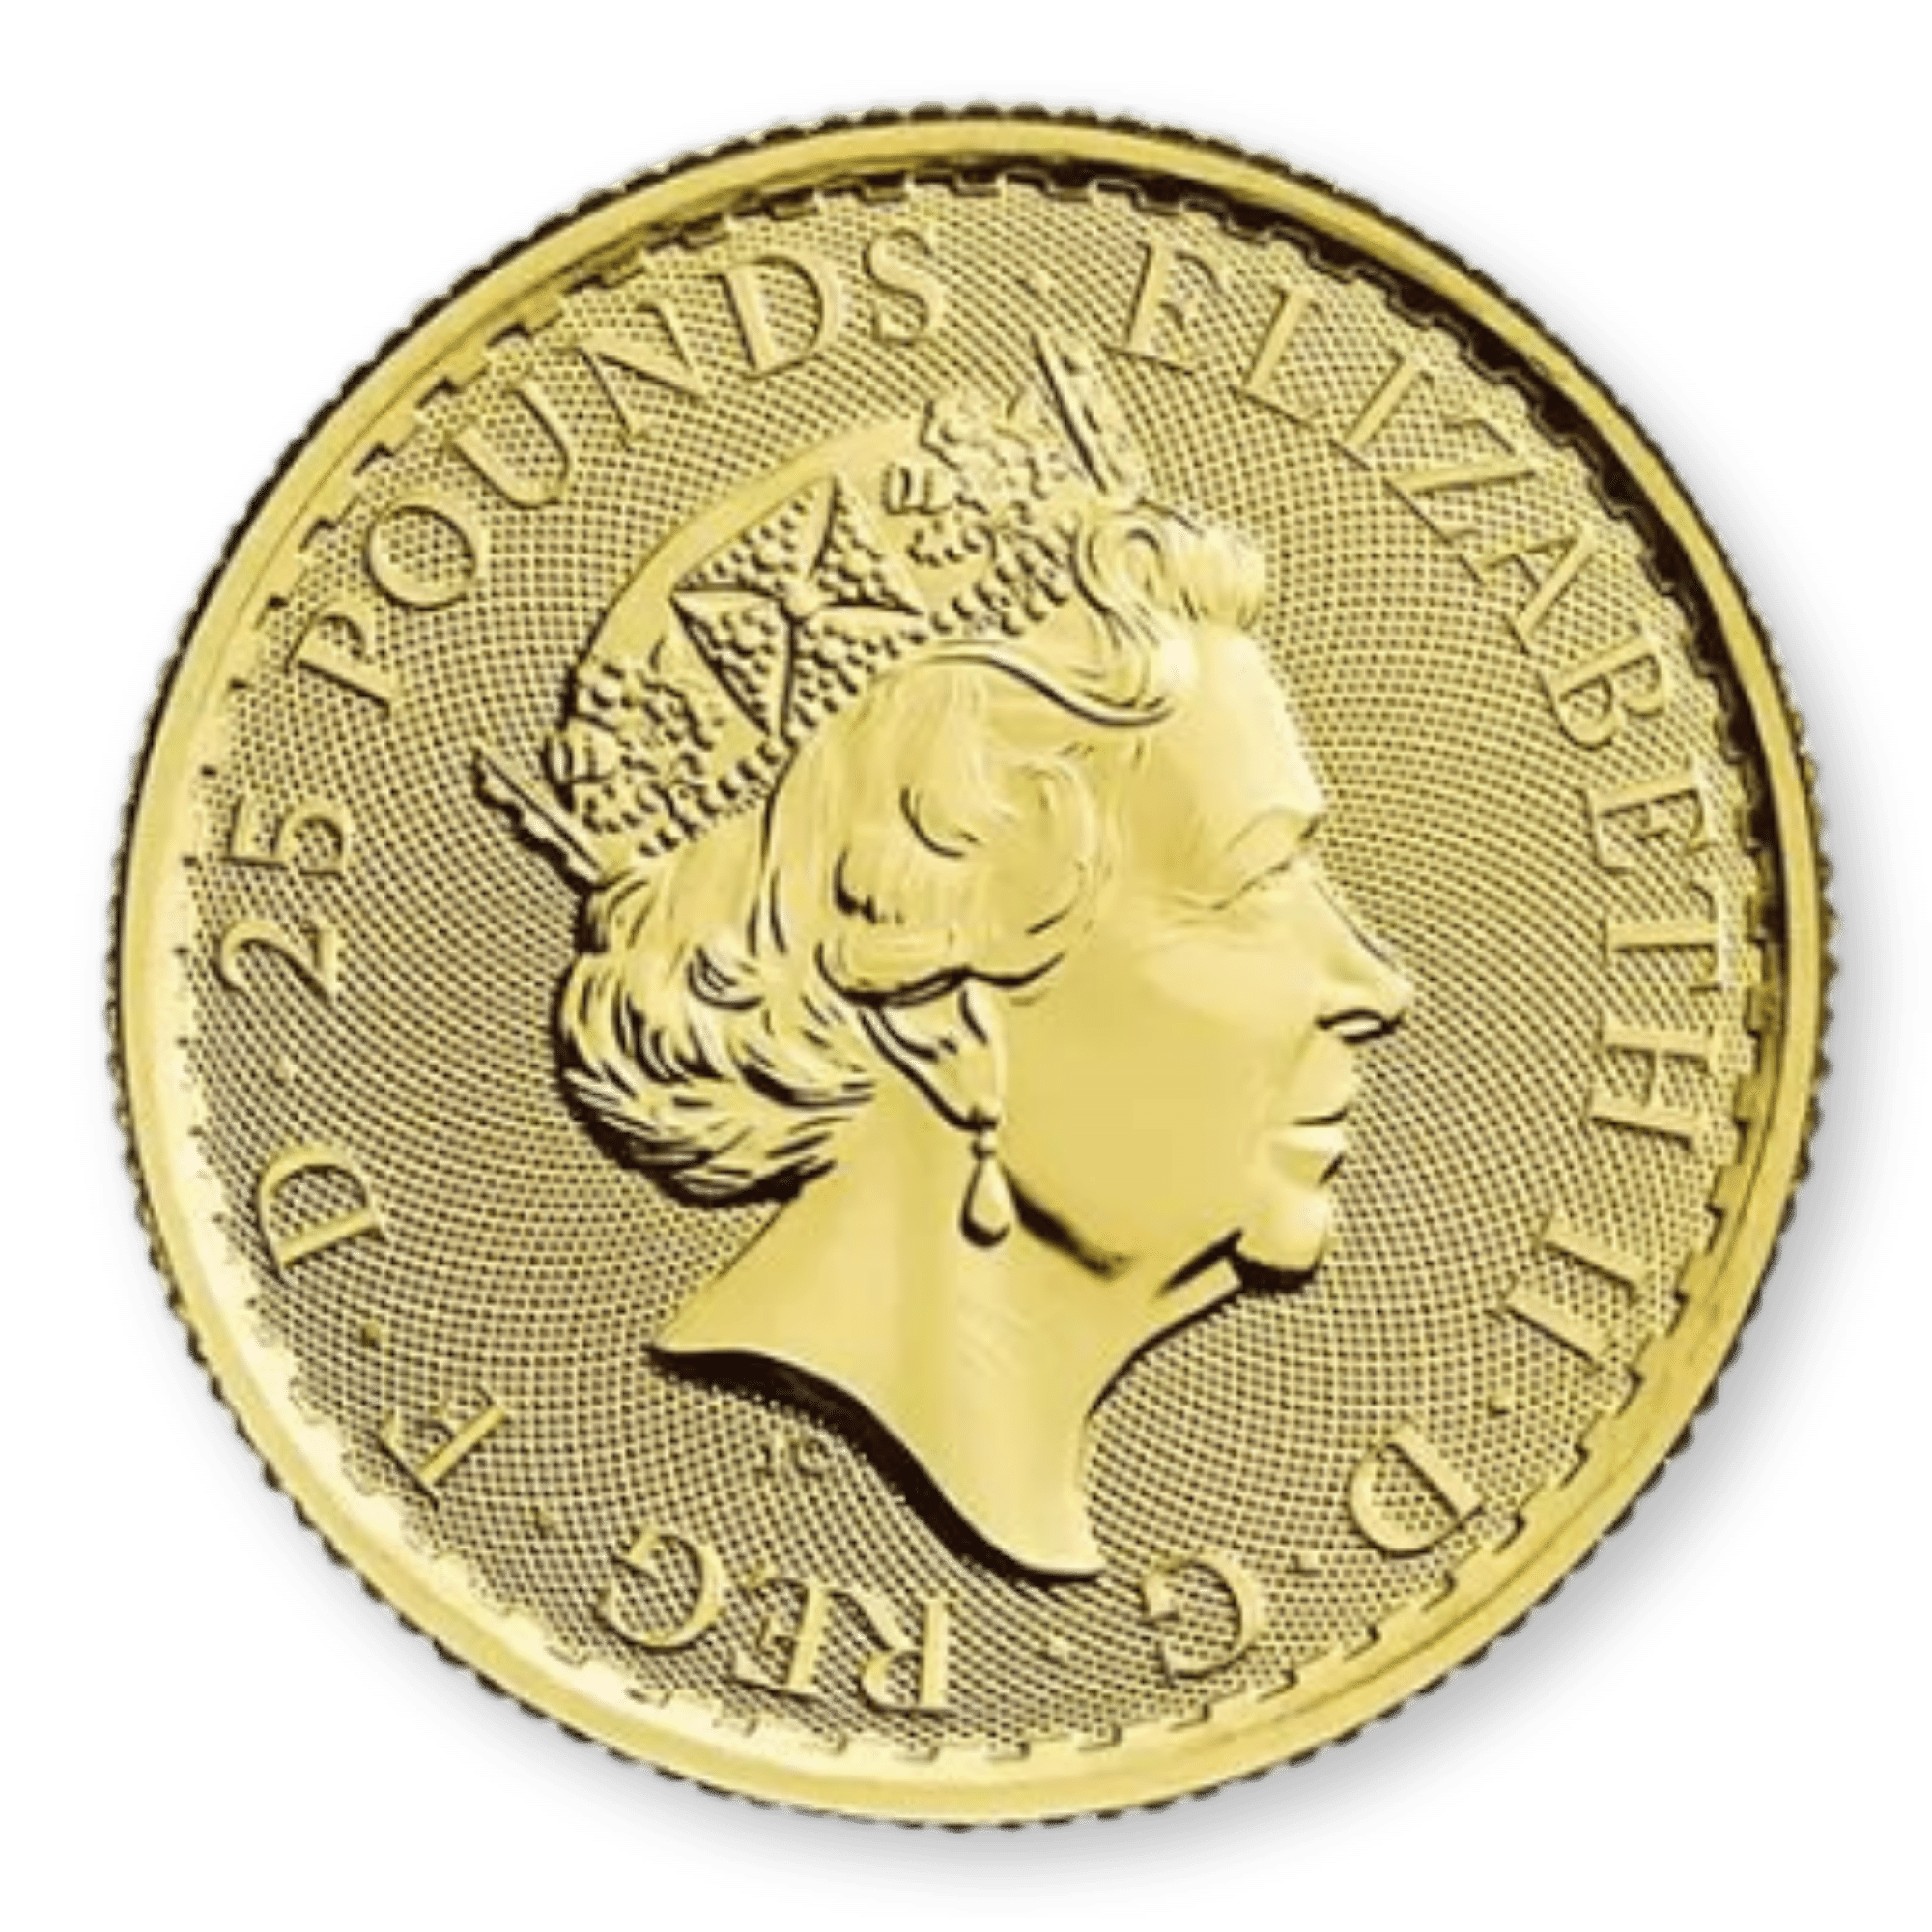 1/4oz Royal Mint Britannia Gold Coin (Random Years)